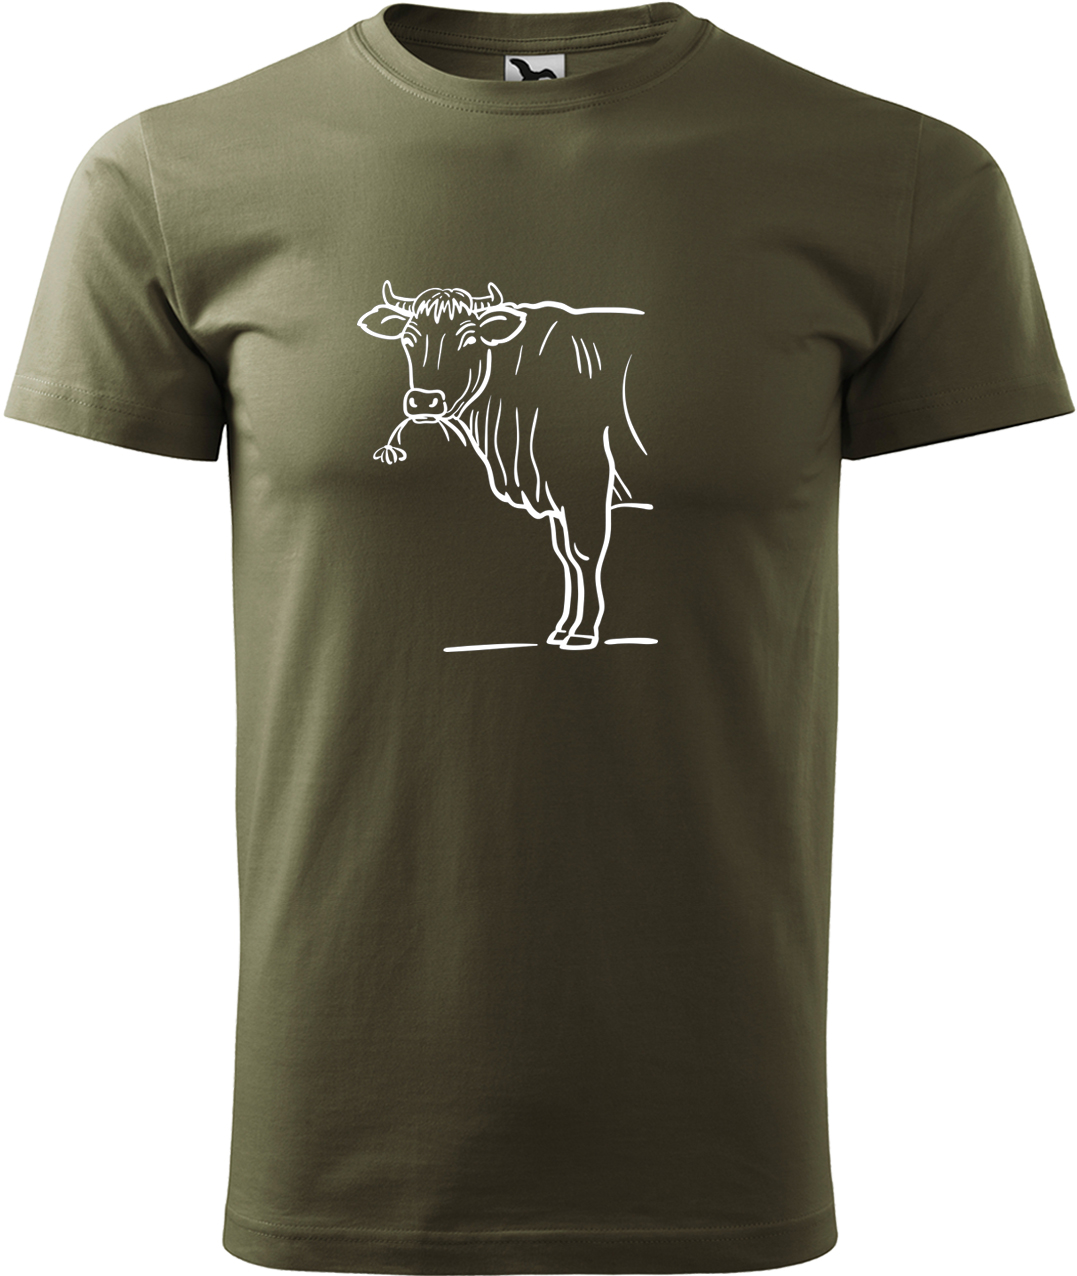 Pánské tričko s krávou - Býk Velikost: M, Barva: Military (69), Střih: pánský